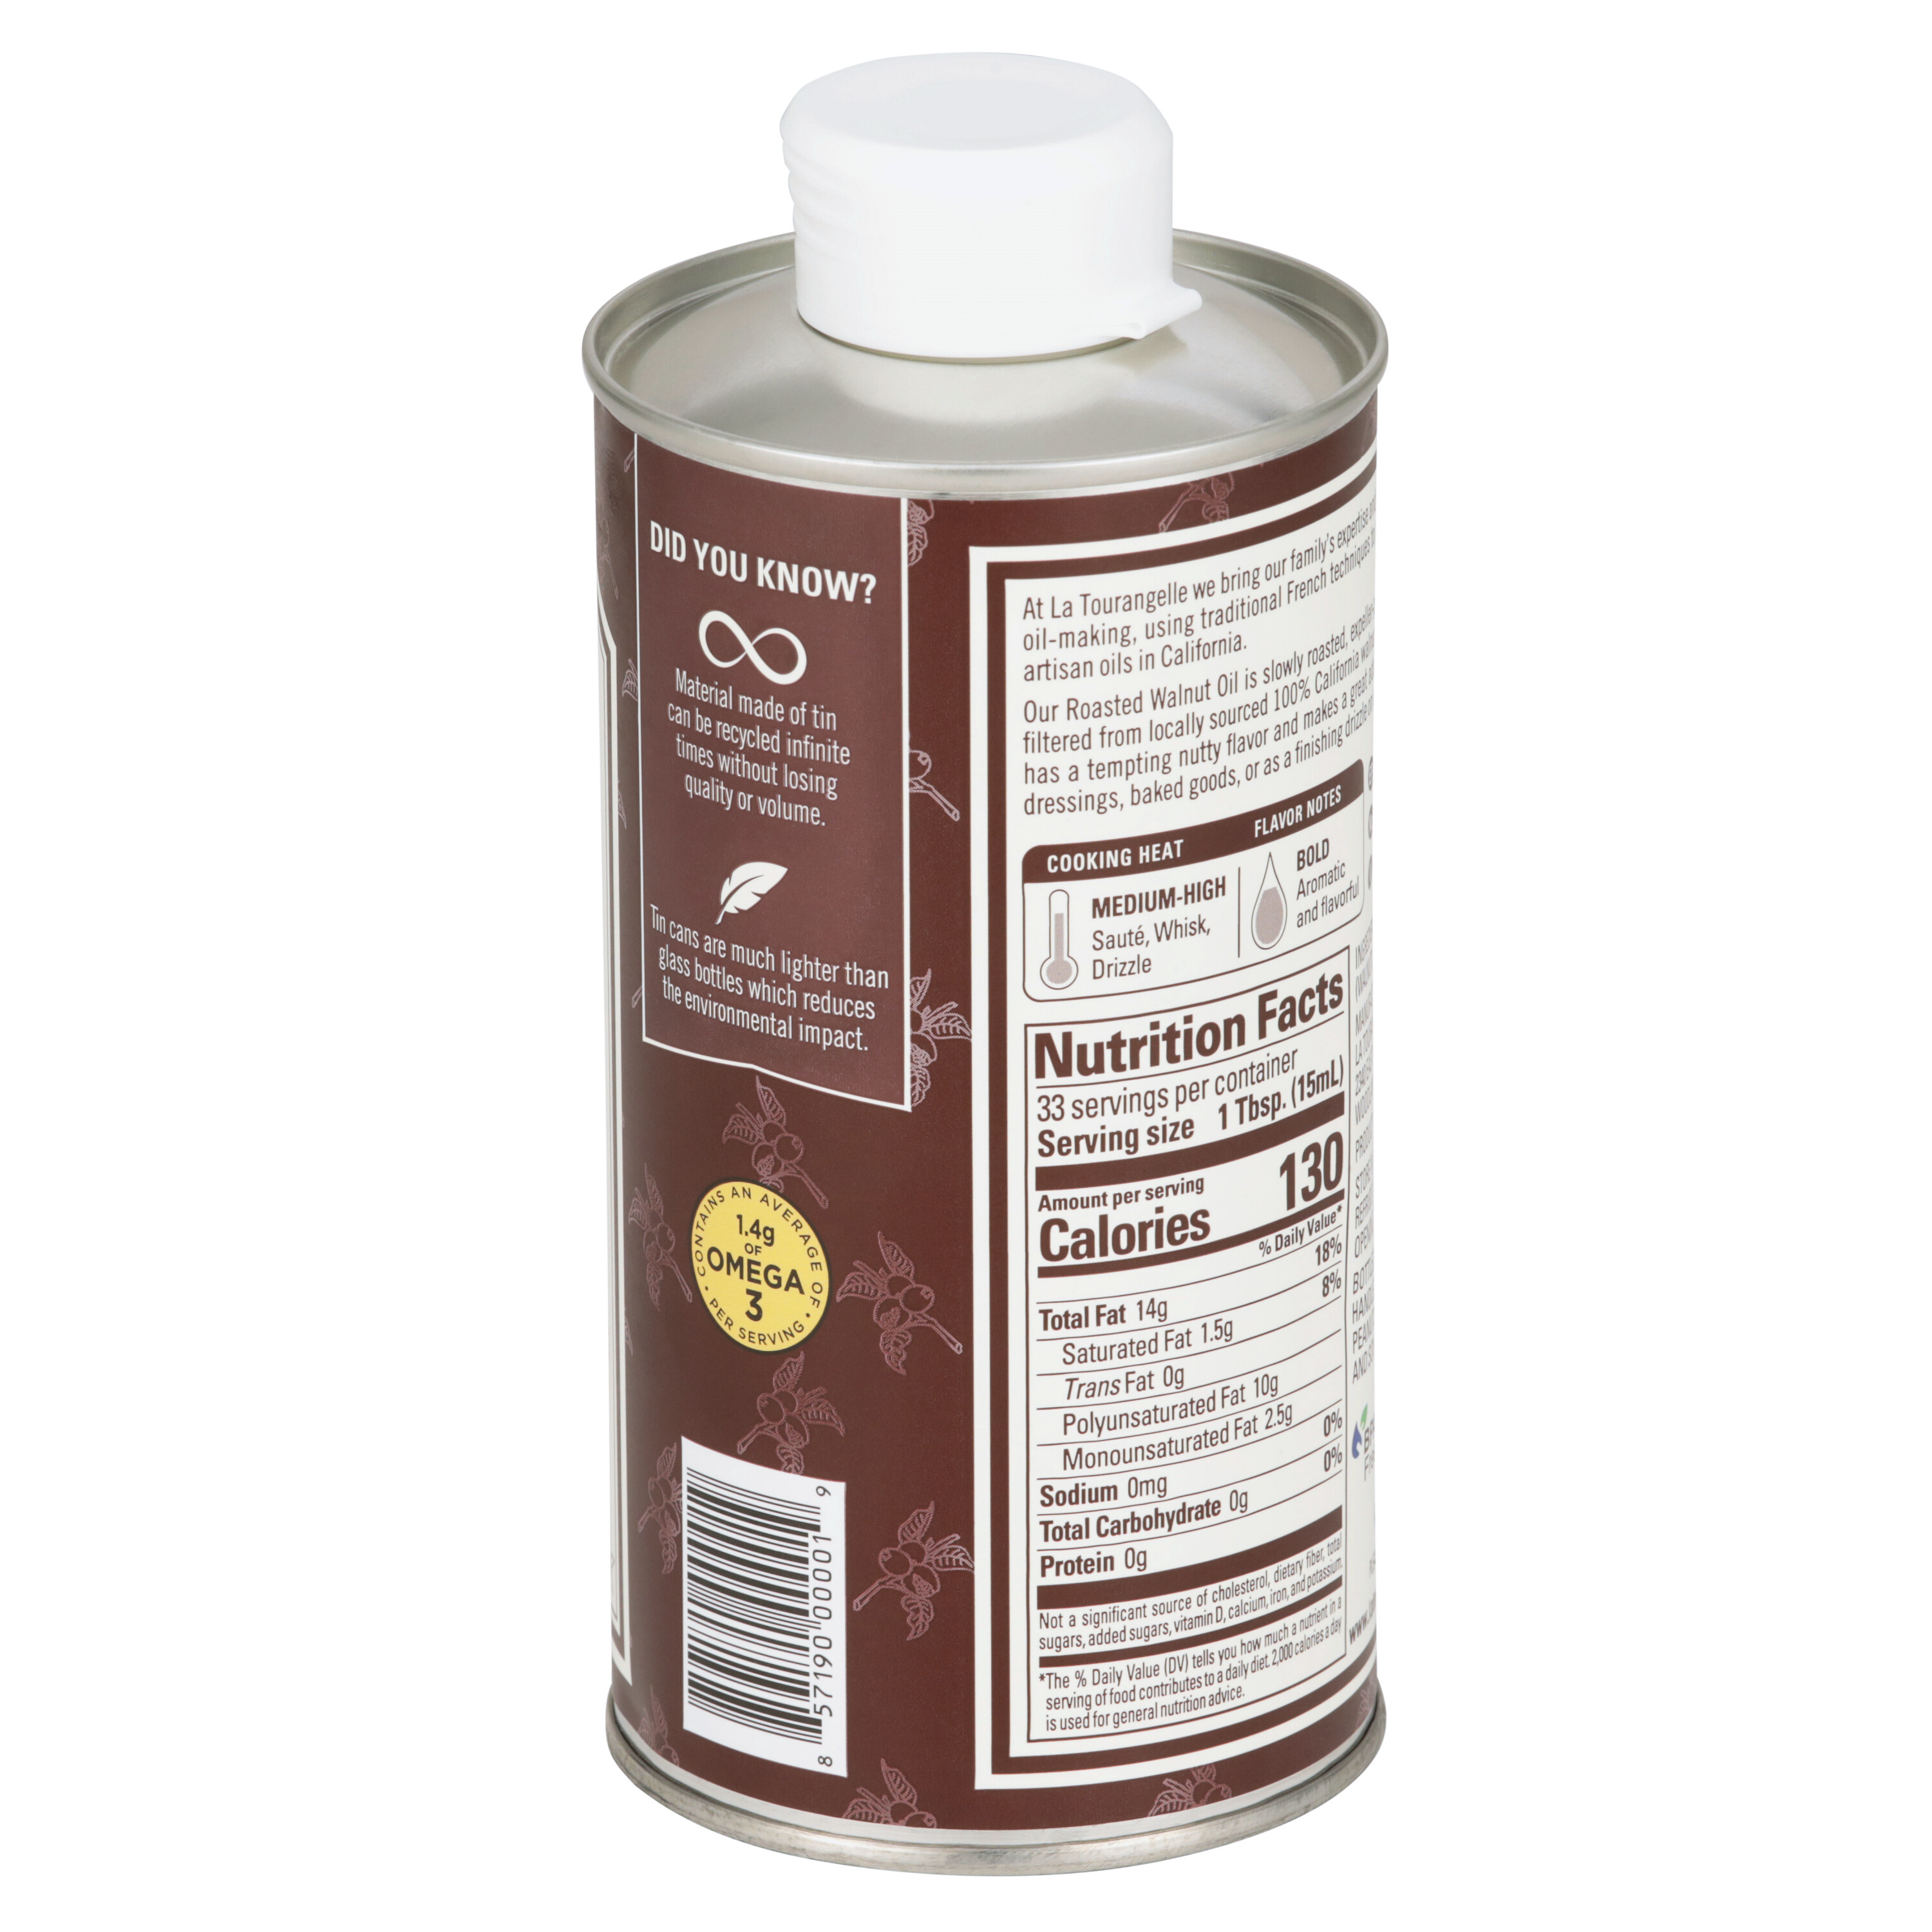 La Tourangelle Roasted Walnut Oil, 16.9 fl oz - Kroger